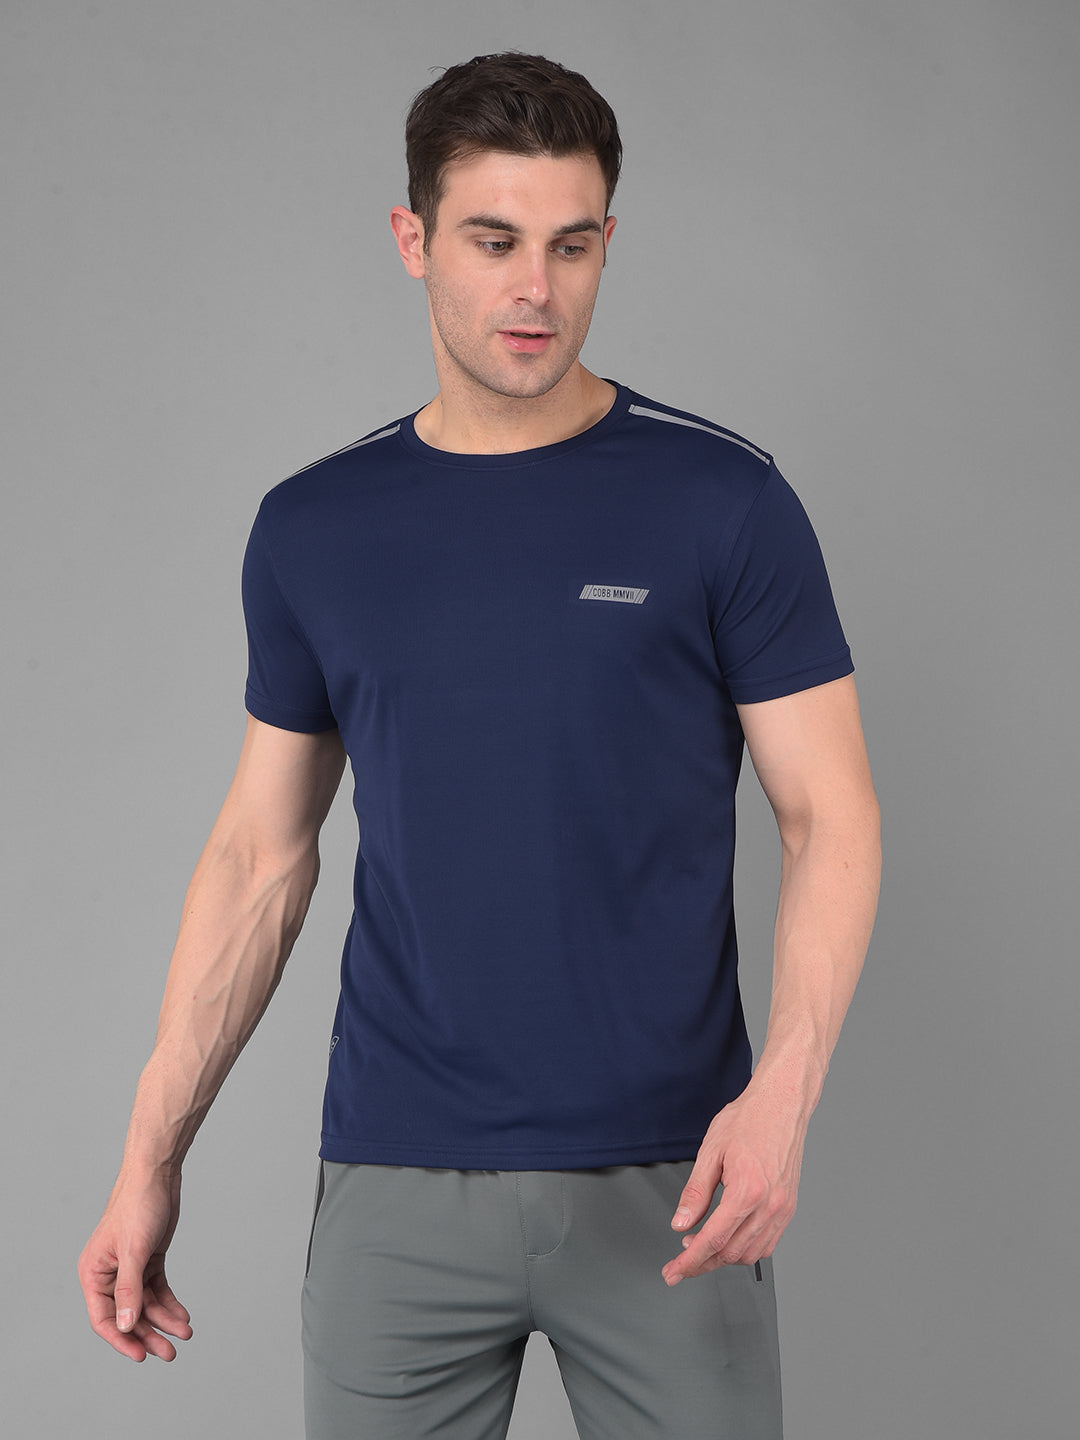 cobb solid navy blue round neck active wear t-shirt